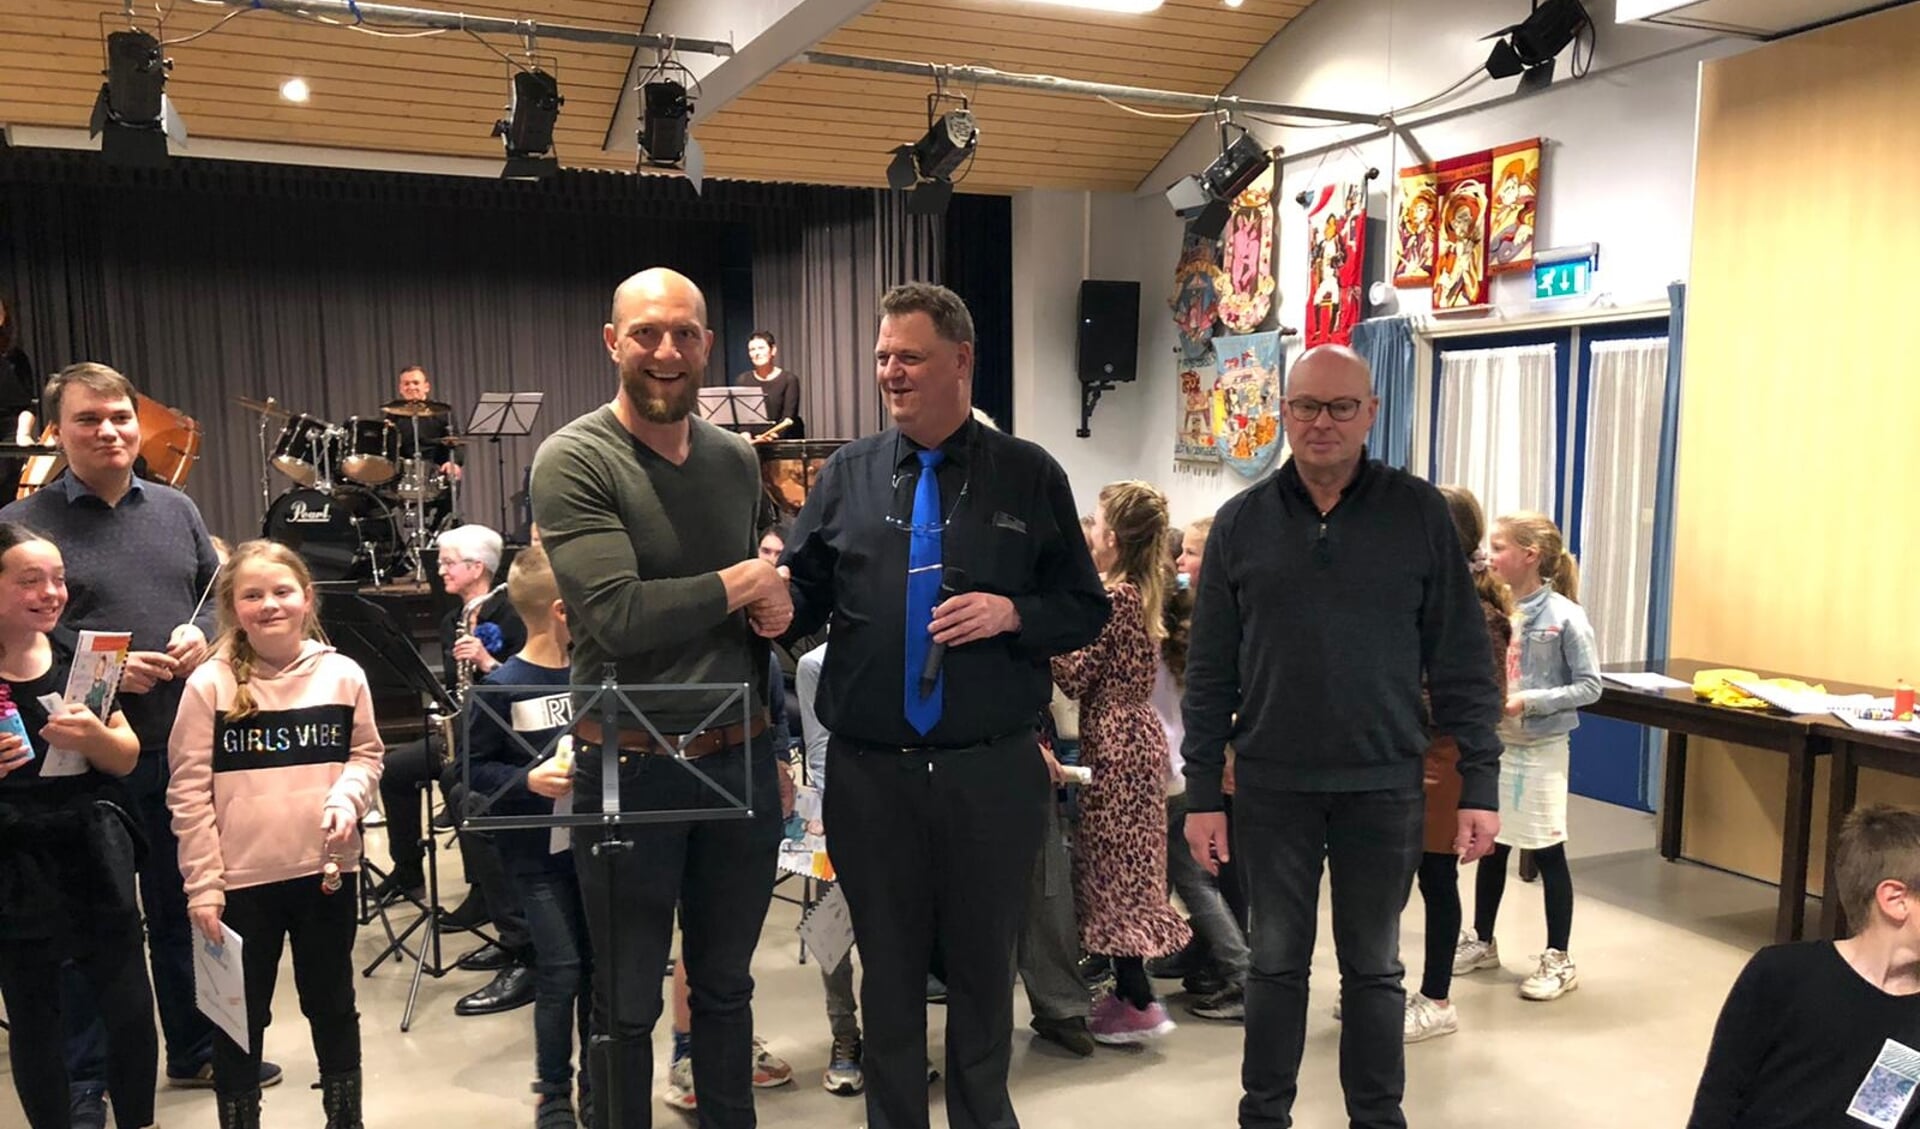 Overhandiging van muzieklessenaars aan St. Jozefschool, namens Dorpsraad Wernhout